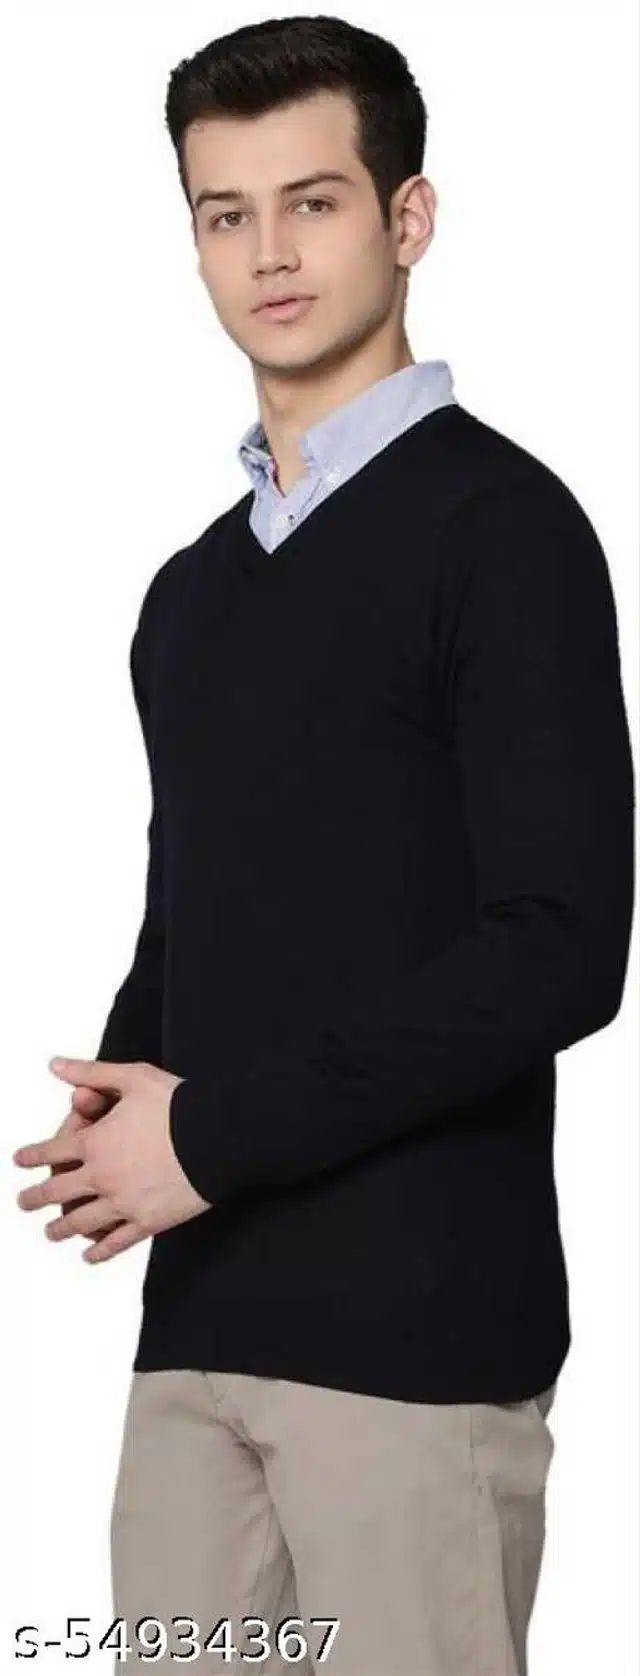 Sweater for Men (Black, M)